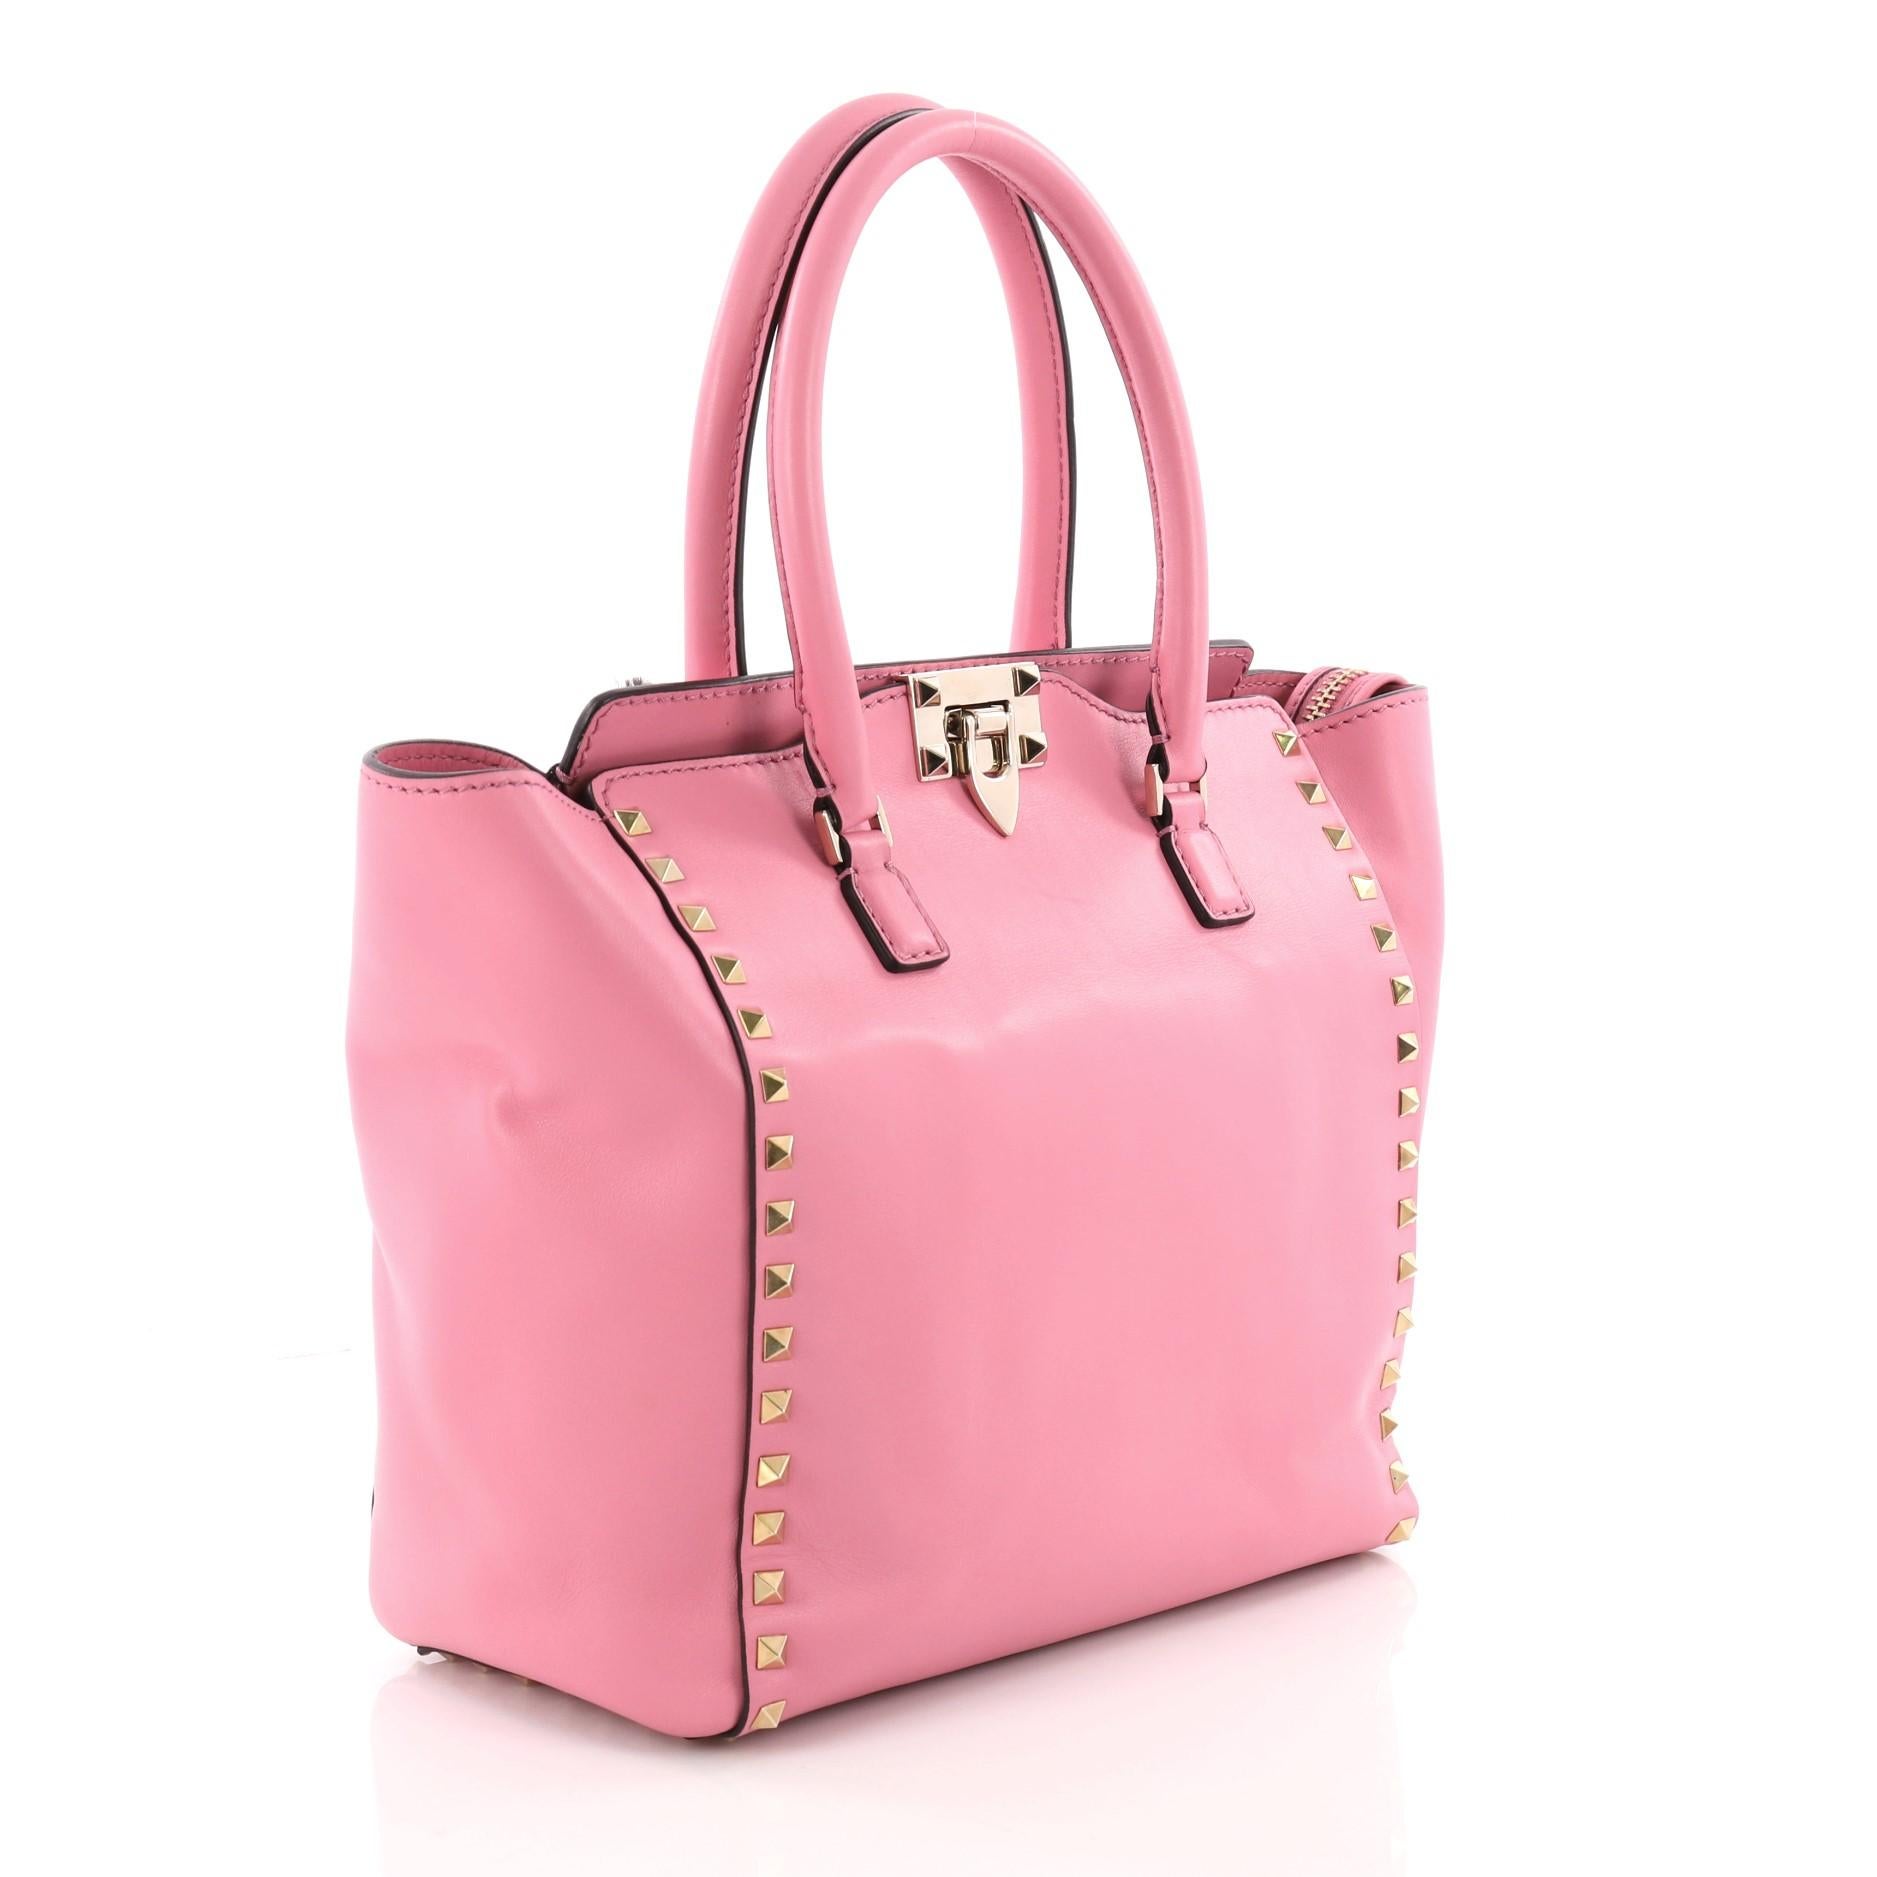 Pink Valentino Rockstud Tote Rigid Leather Medium